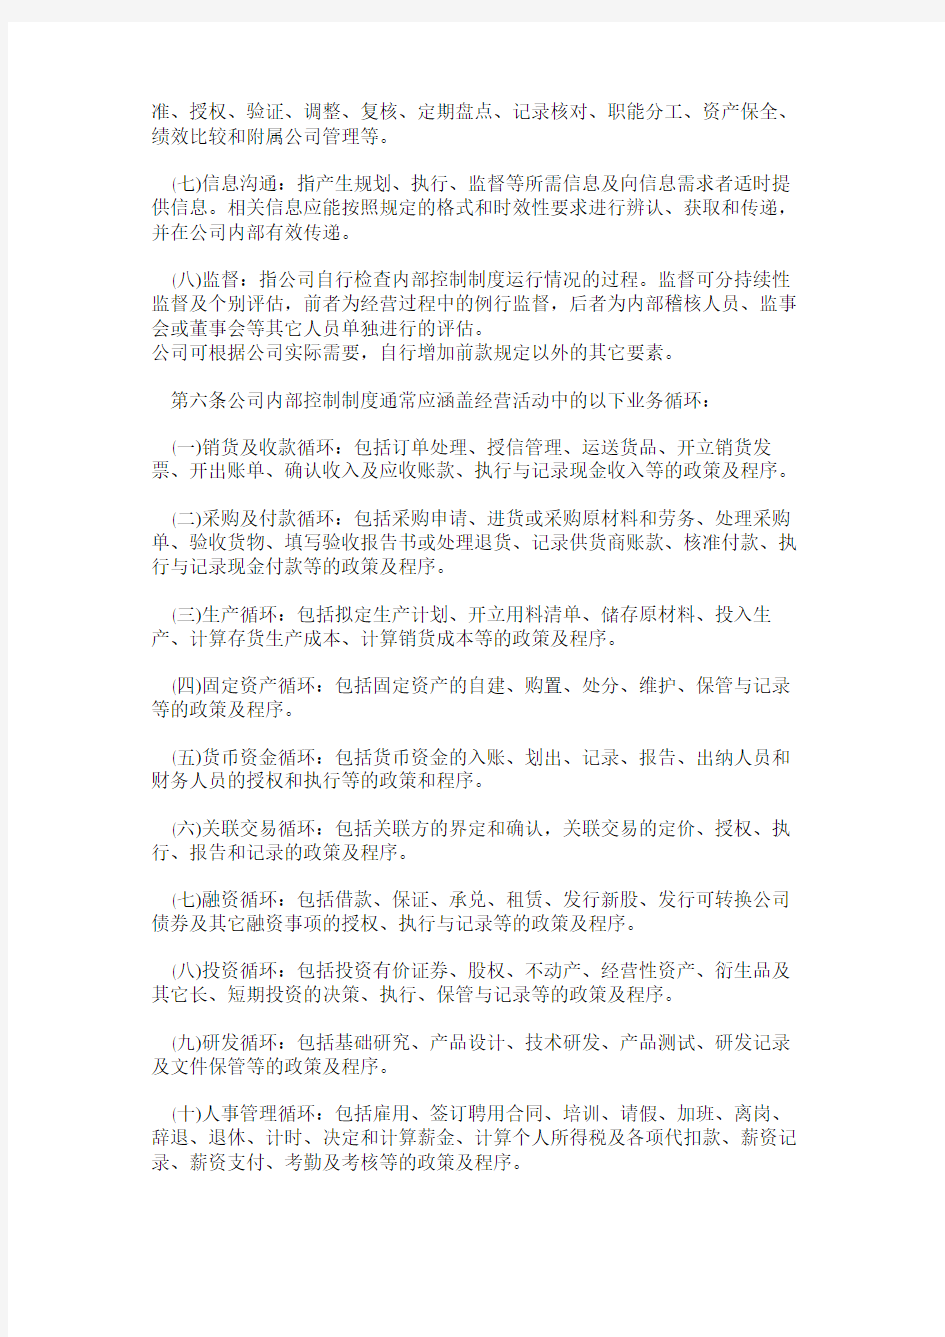 上海证券交易所上市公司内部控制制度指引(全文)